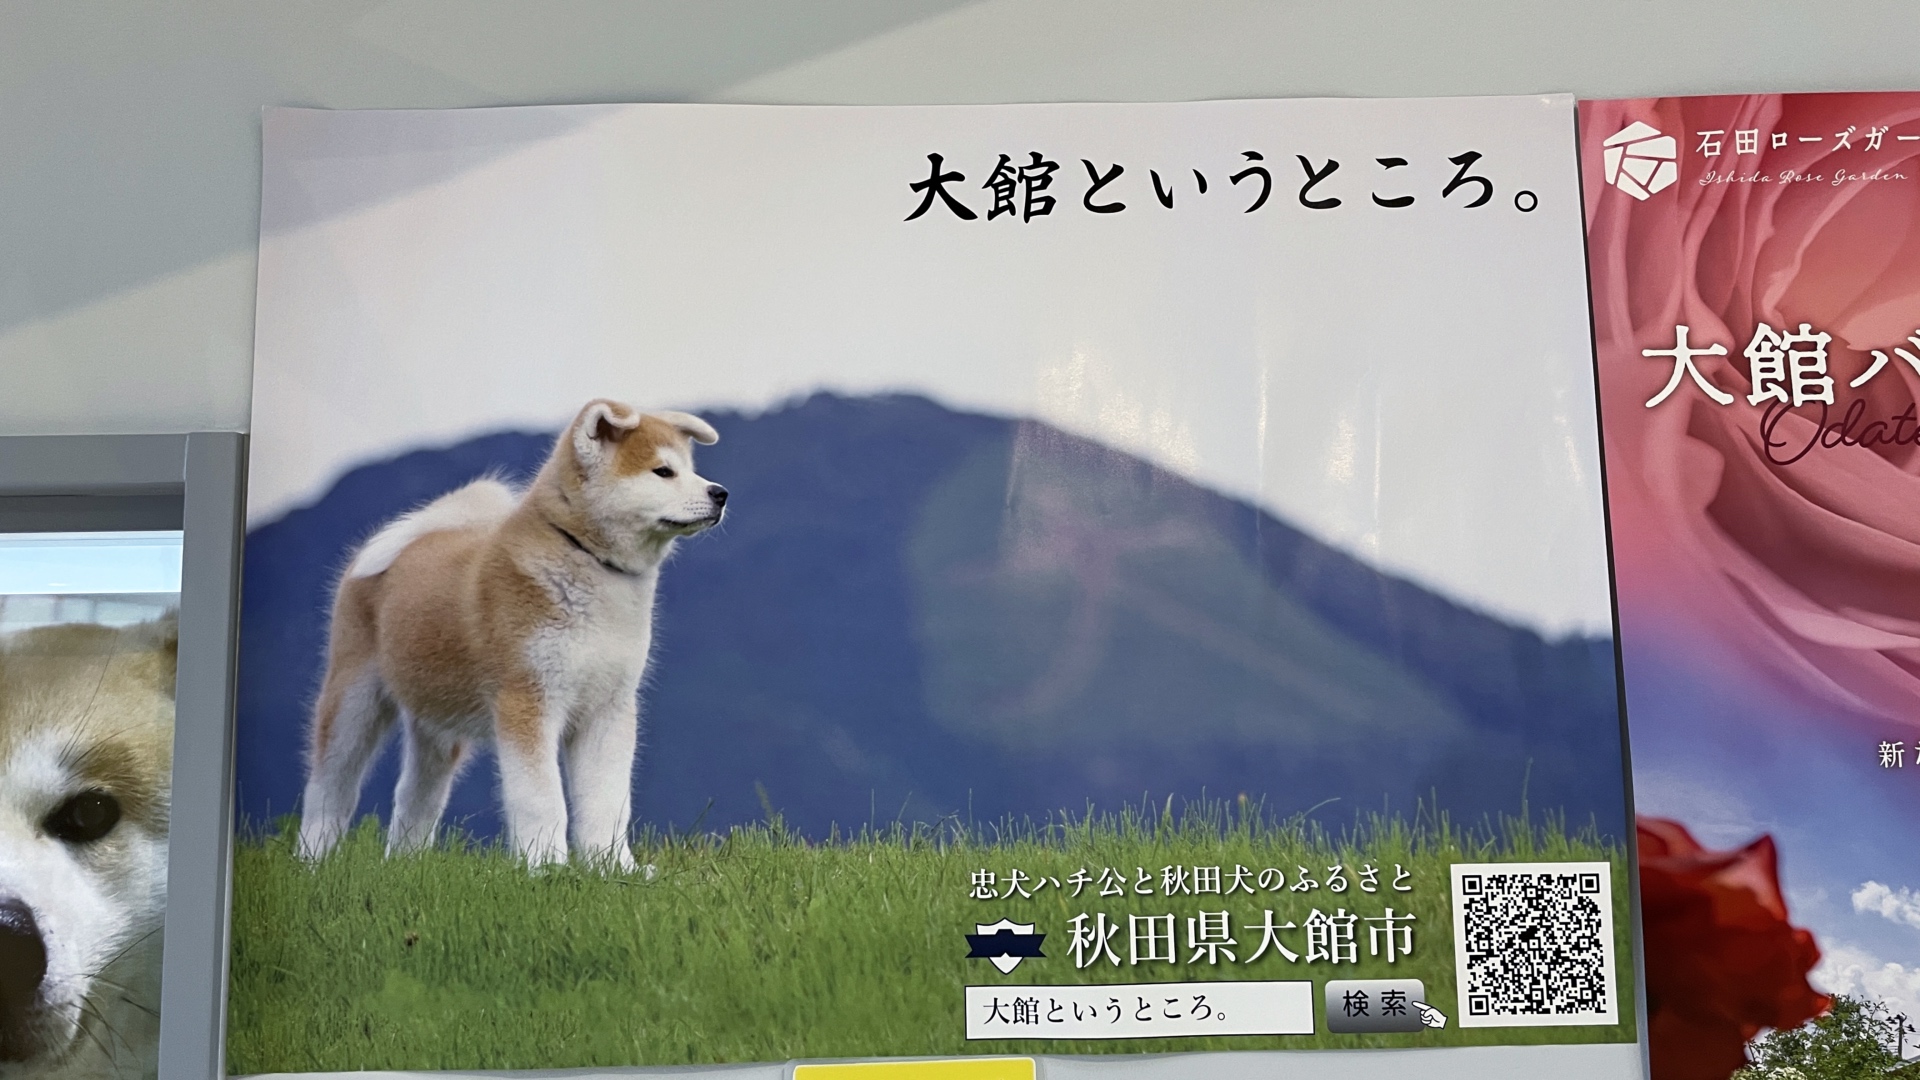 Die Hunderasse Akita ist ein Symbol der gleichnamigen Präfektur.